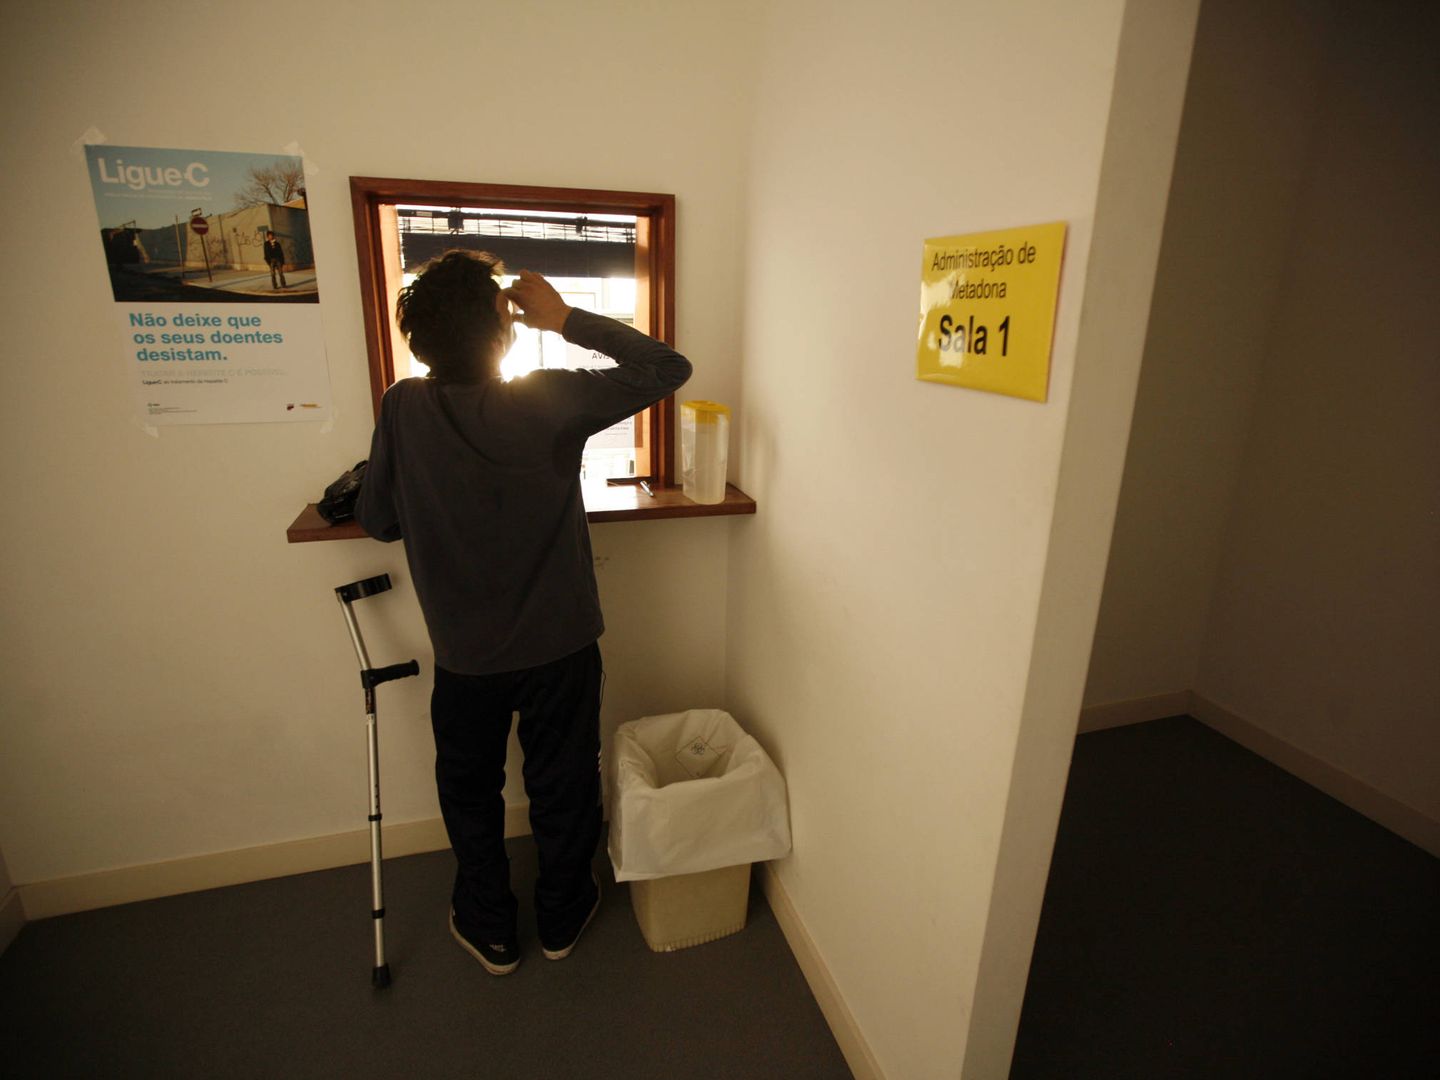 Un paciente toma su dosis de metadona en una clínica de rehabilitación de Lisboa. (Reuters/Rafael Marchante)